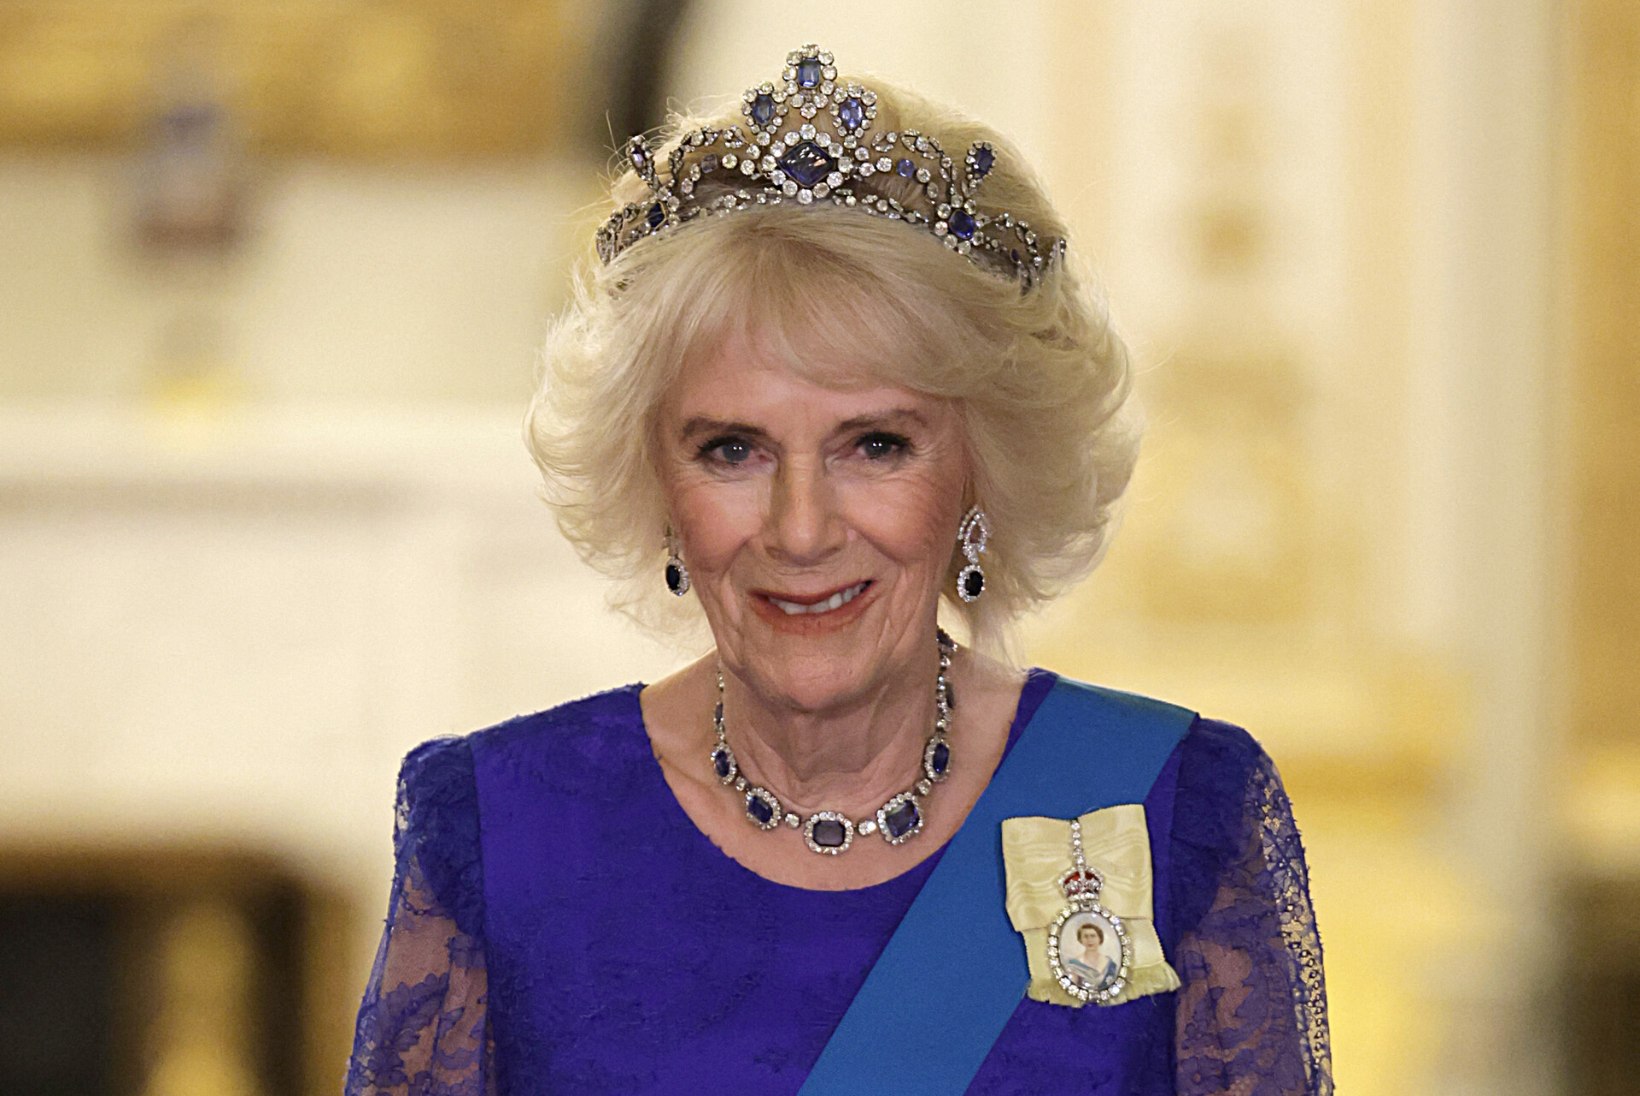 KUIDAS ROTVEILERIST SAI KUNINGANNA: Camilla idealiseeris oma vanavanaema, kes oli kuninga armuke. Tee kroonini aga oli oi kui okkaline